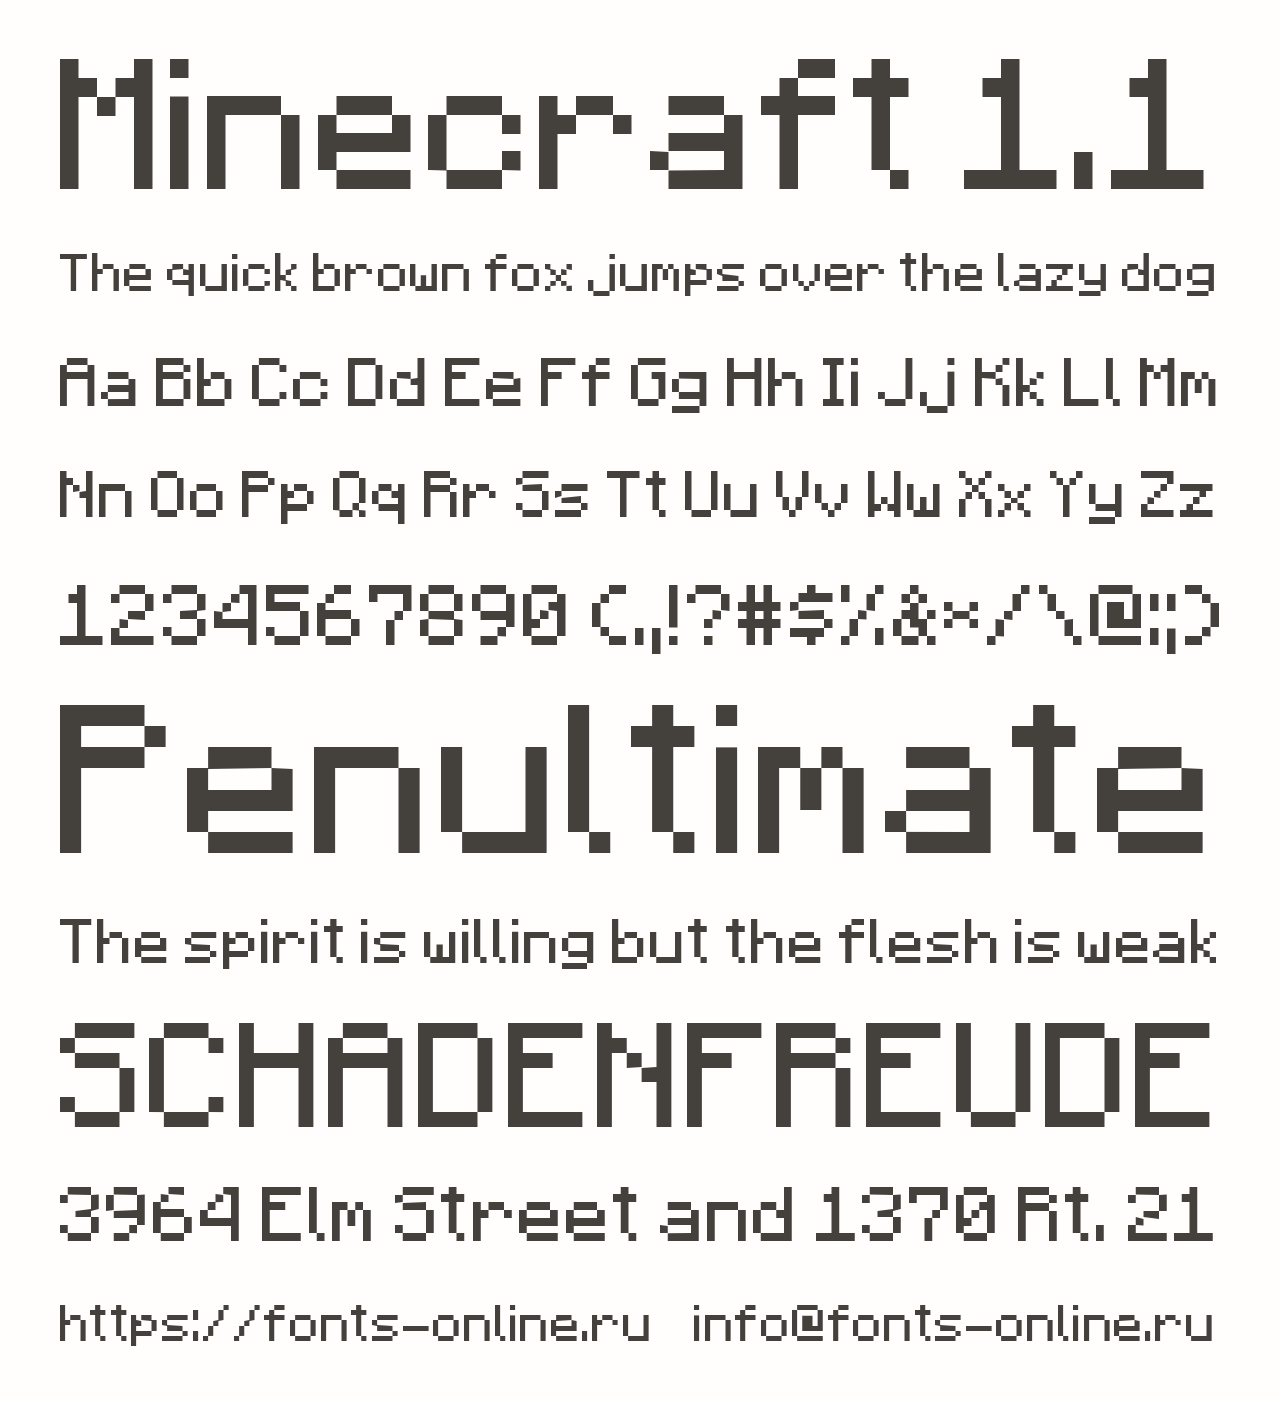 Minecraftia Font Download